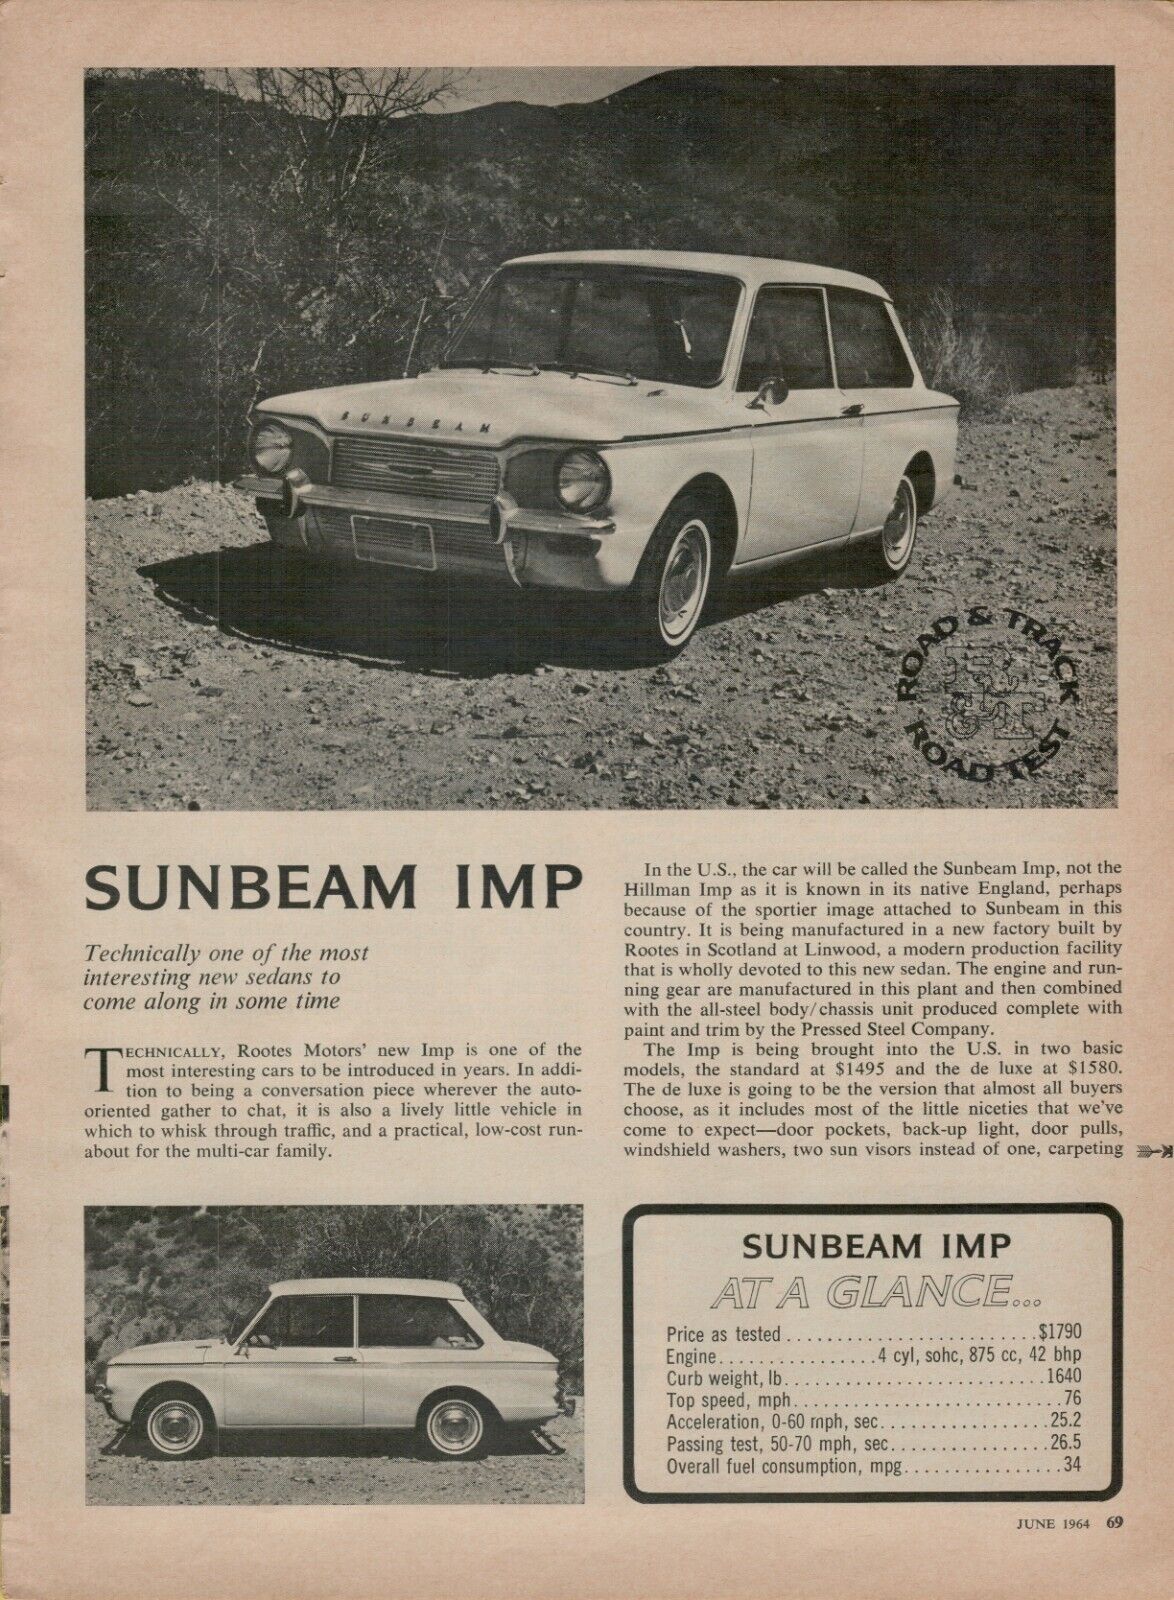 1965 Sunbeam IMP 4 Page Road Test Automobile Photo Vintage Print Ad